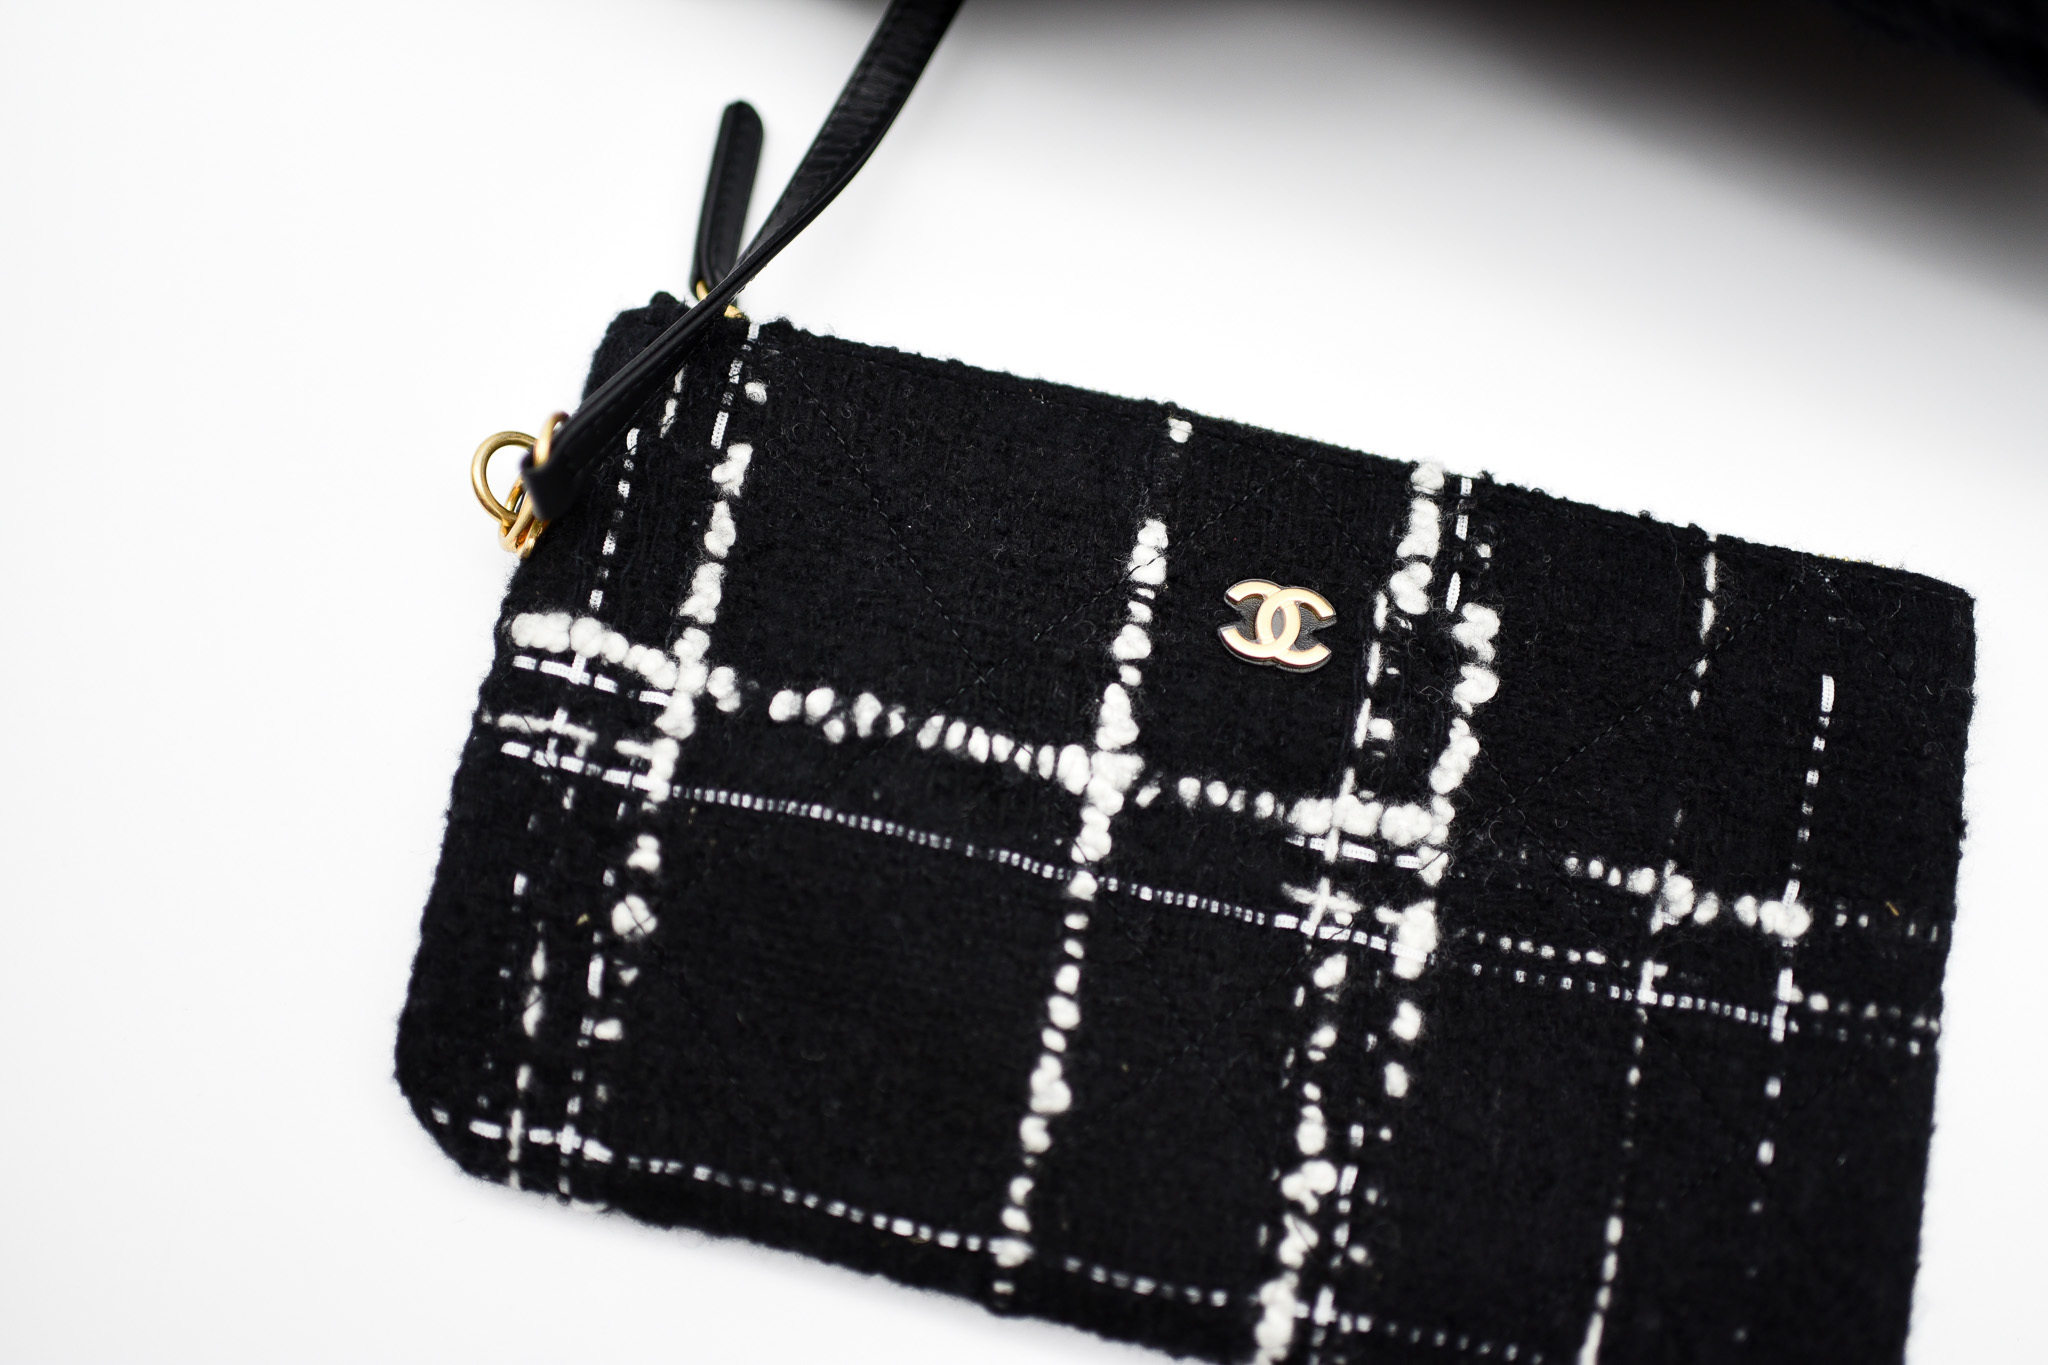 Chanel 22 tweed handbag Chanel Black in Tweed - 36846269